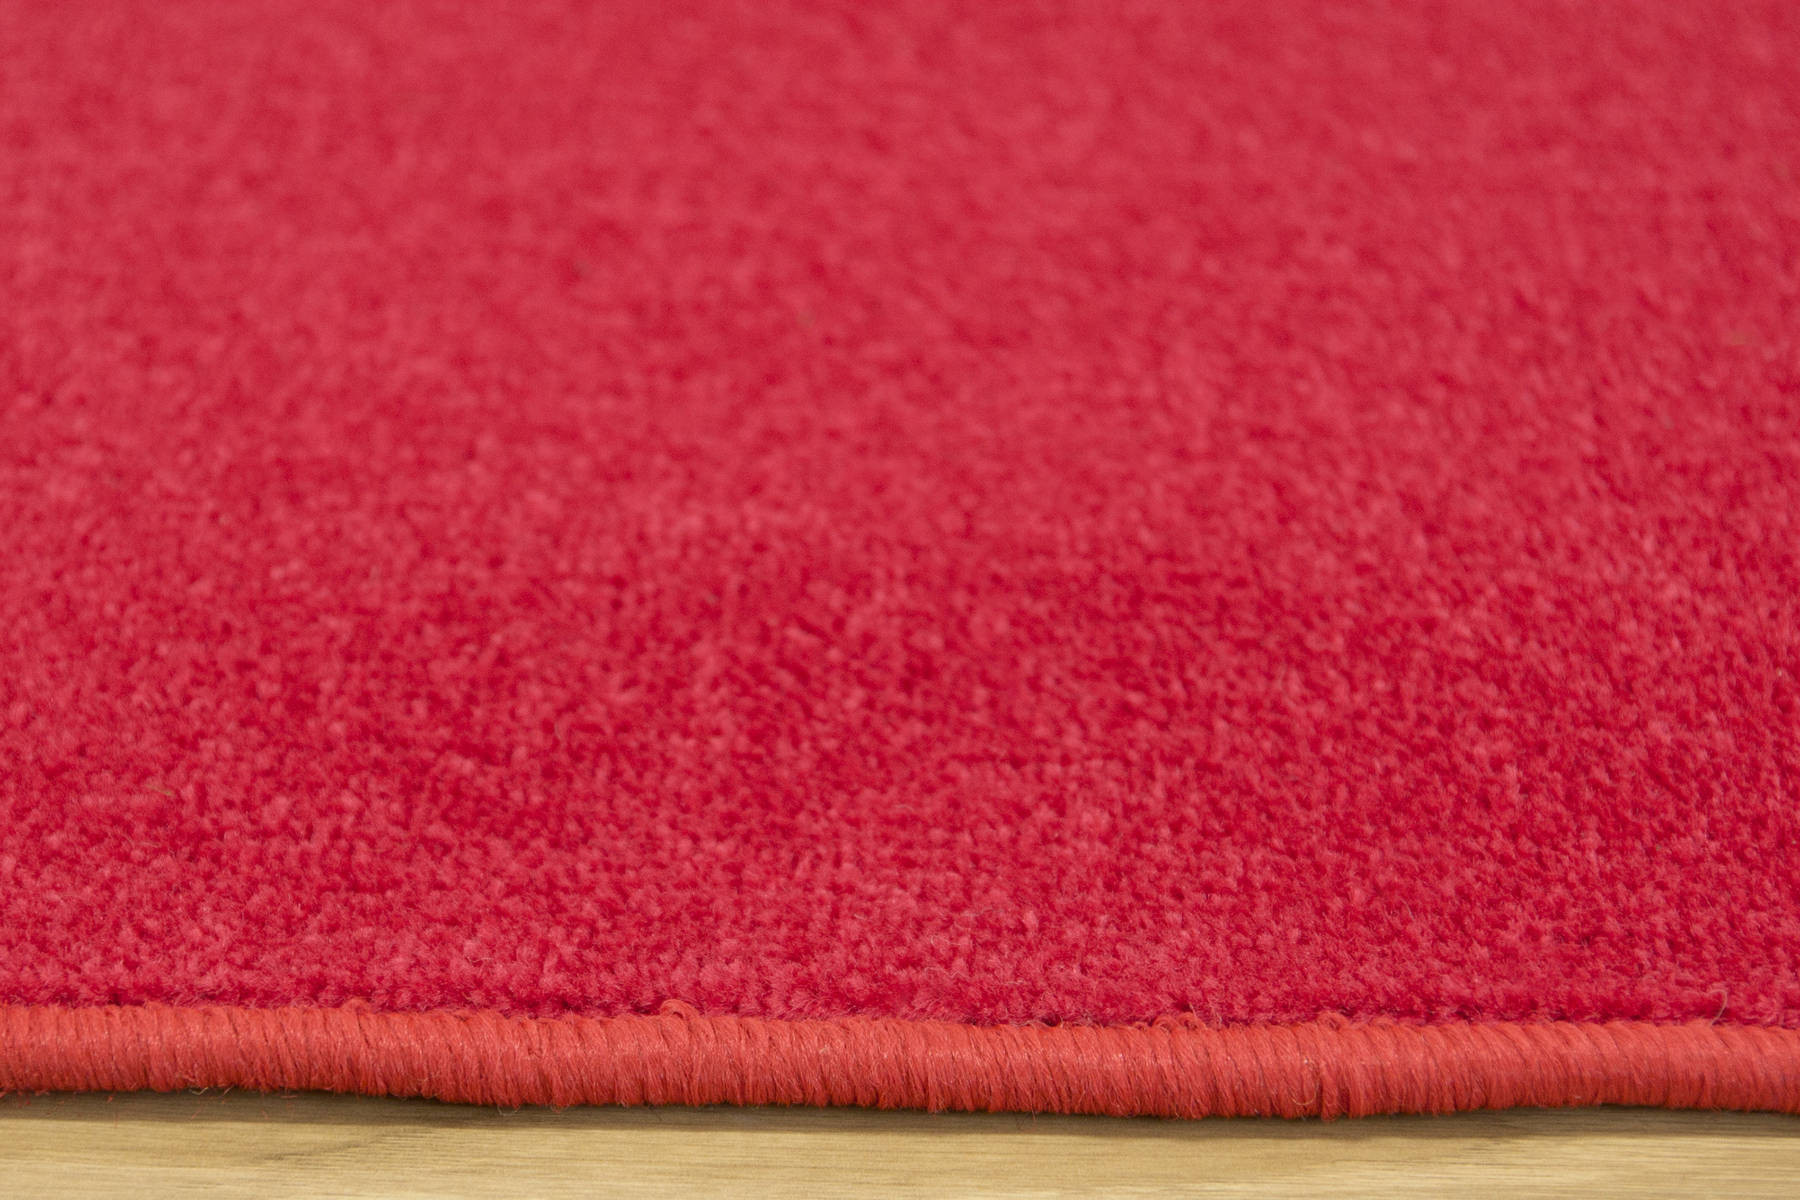 Metražný koberec Tiffany 120 červený